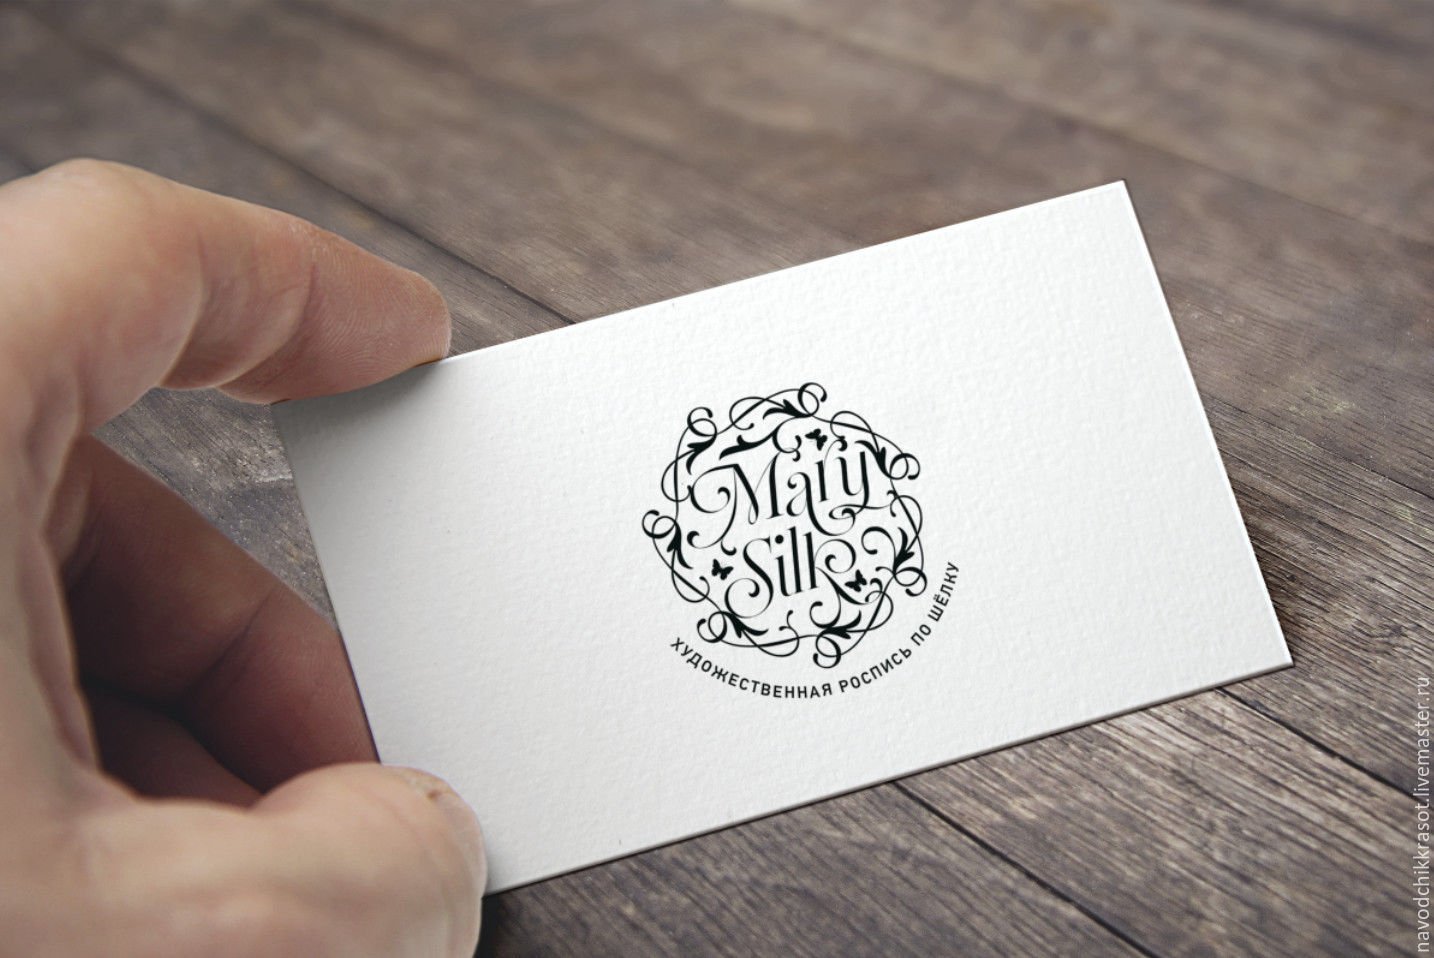 Логотип на визитку. Логотип для визитки. Профессиональные визитки. Дизайнерские визитки. Дизайнерские визитки белые.